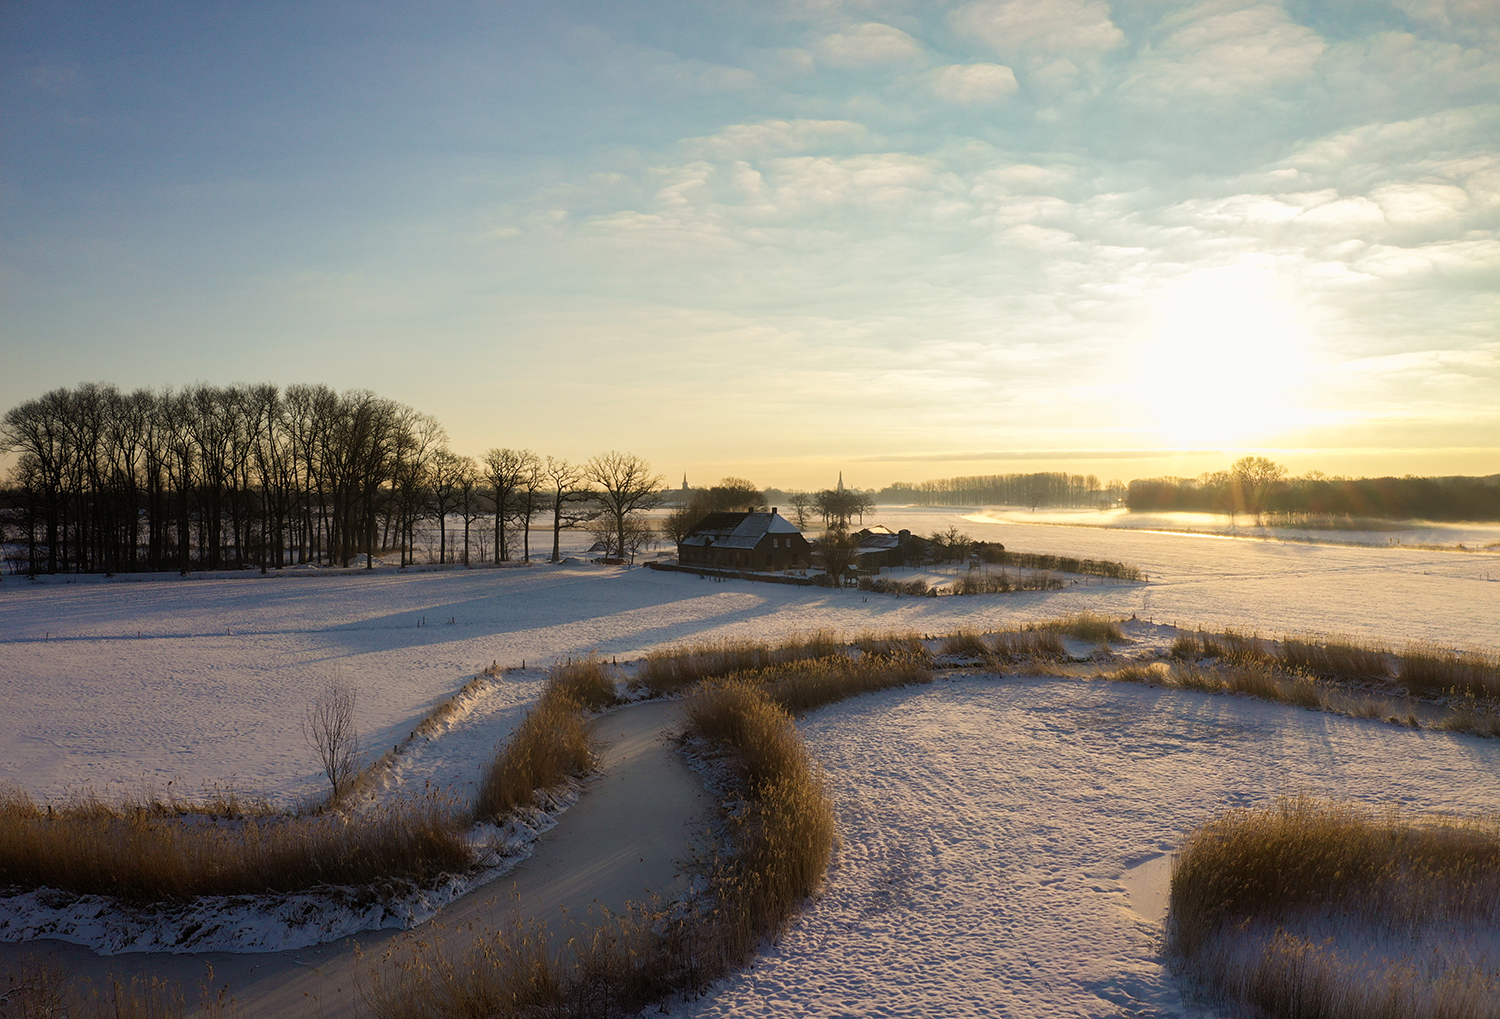 Kasteel Heeswijk winter sneeuw drone luchtfoto (c) Bart Coolen